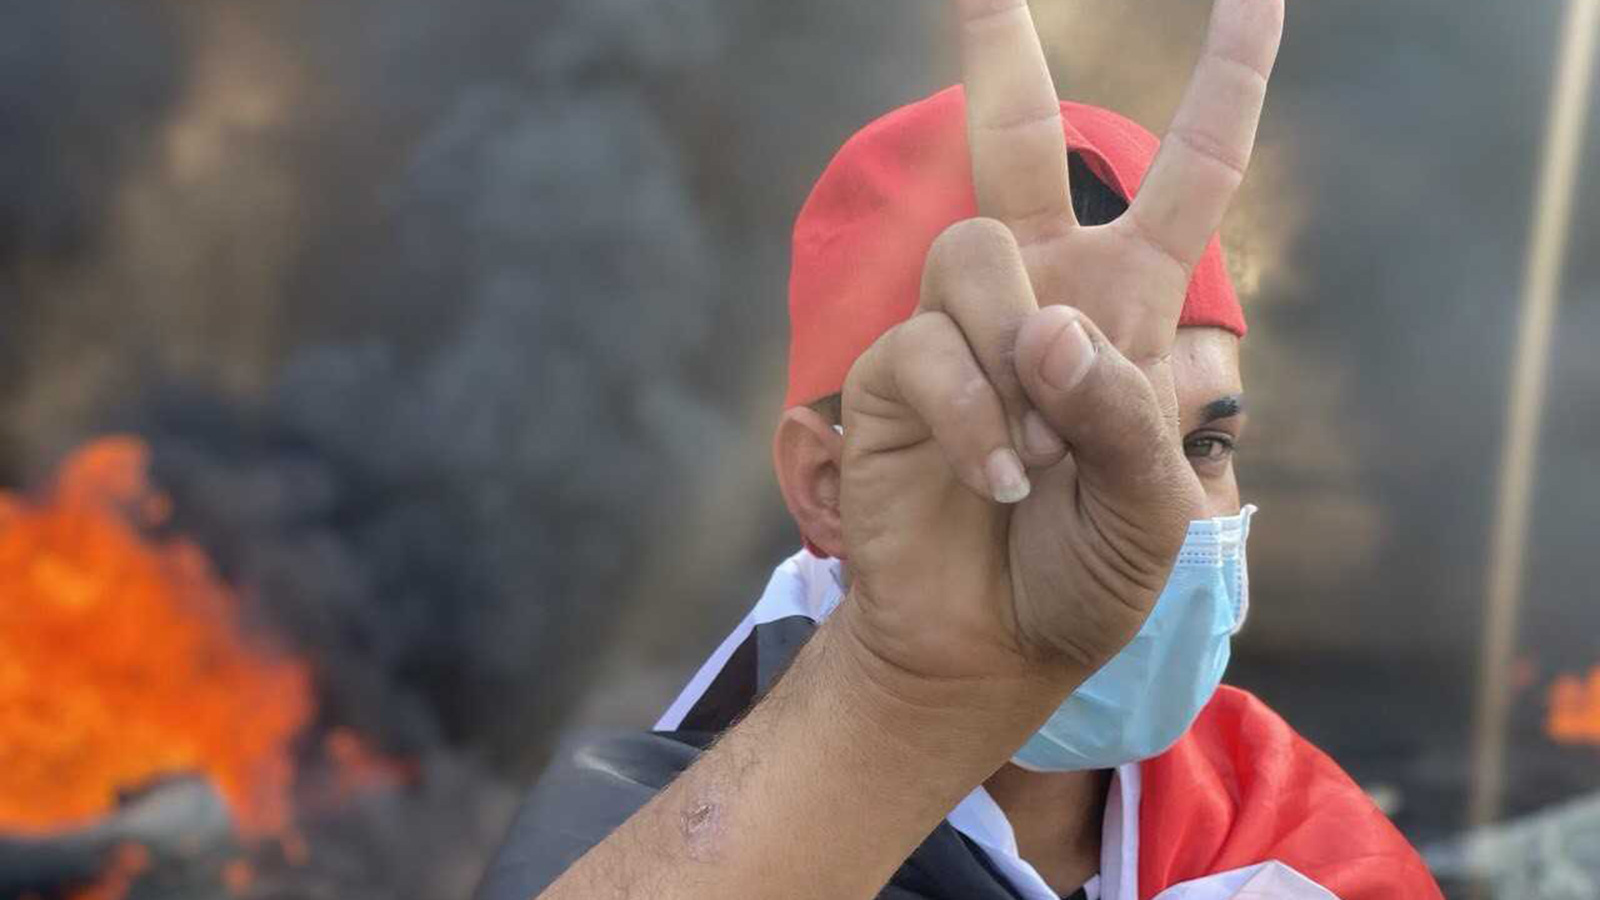 ‪المتظاهرون حددوا شروطا لرئيس وزراء قد لا تنطبق على الشريف علي‬ (الجزيرة)